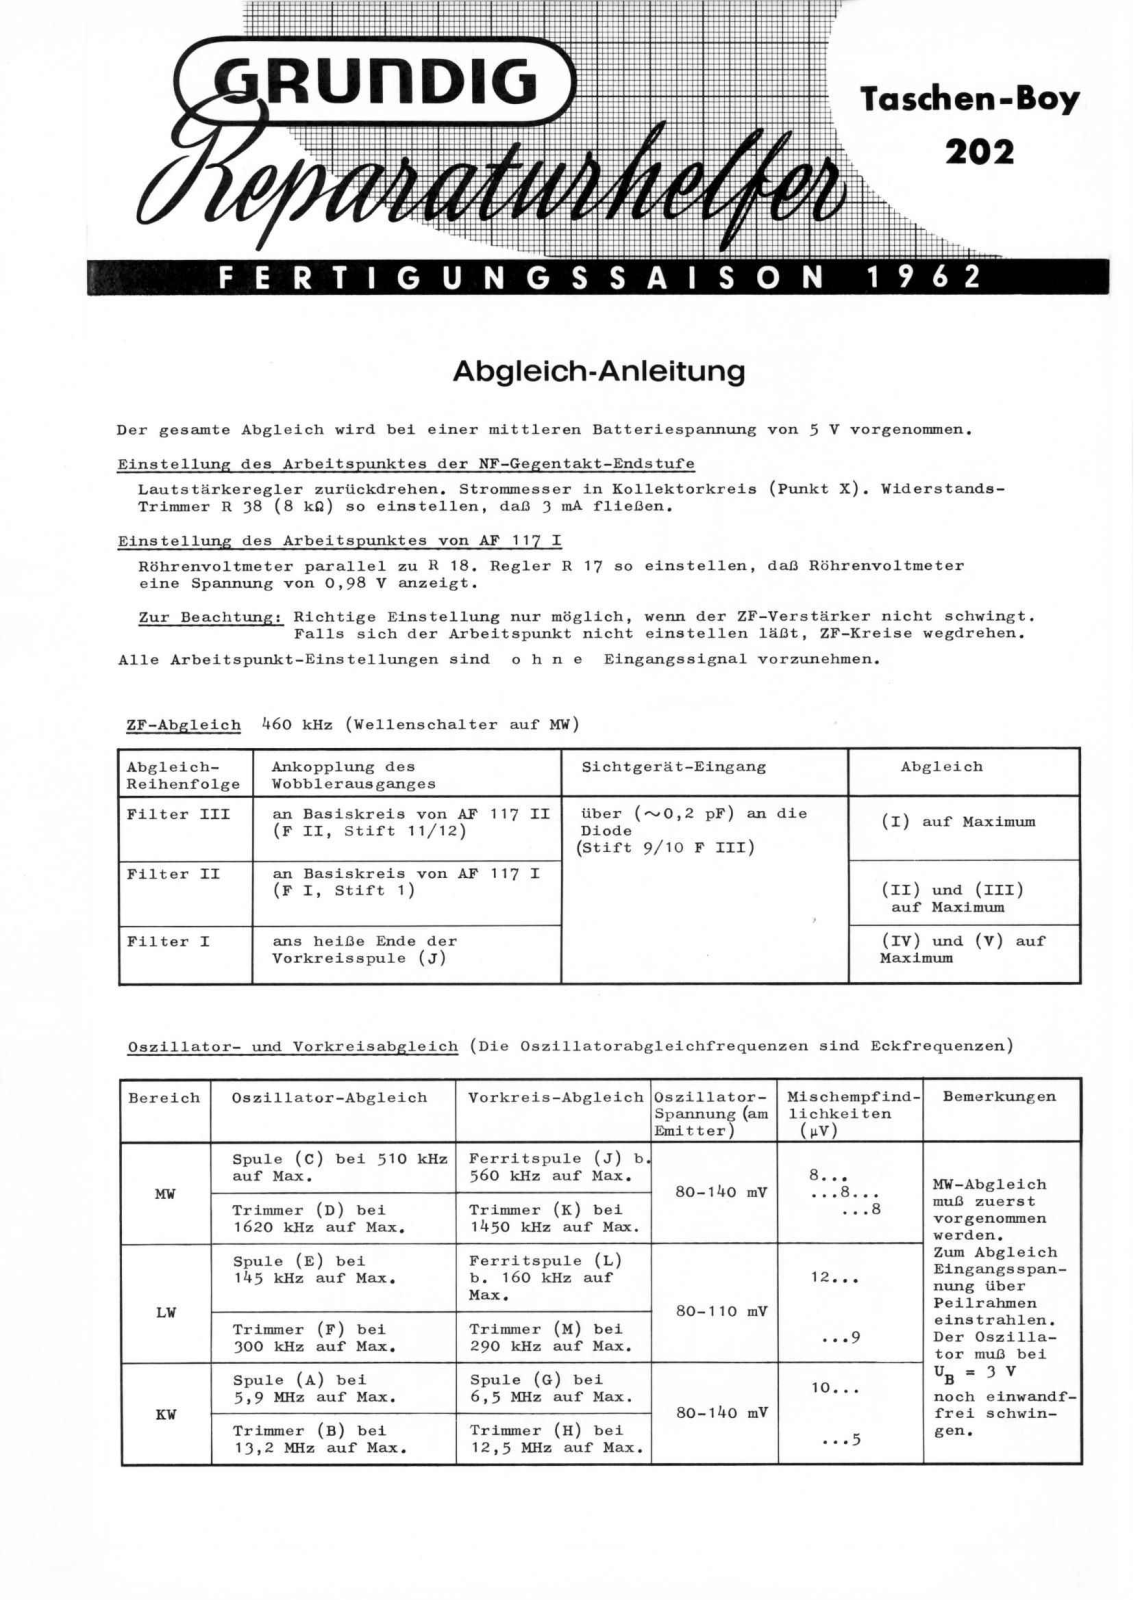 Grundig Taschen-Boy-202 Service Manual